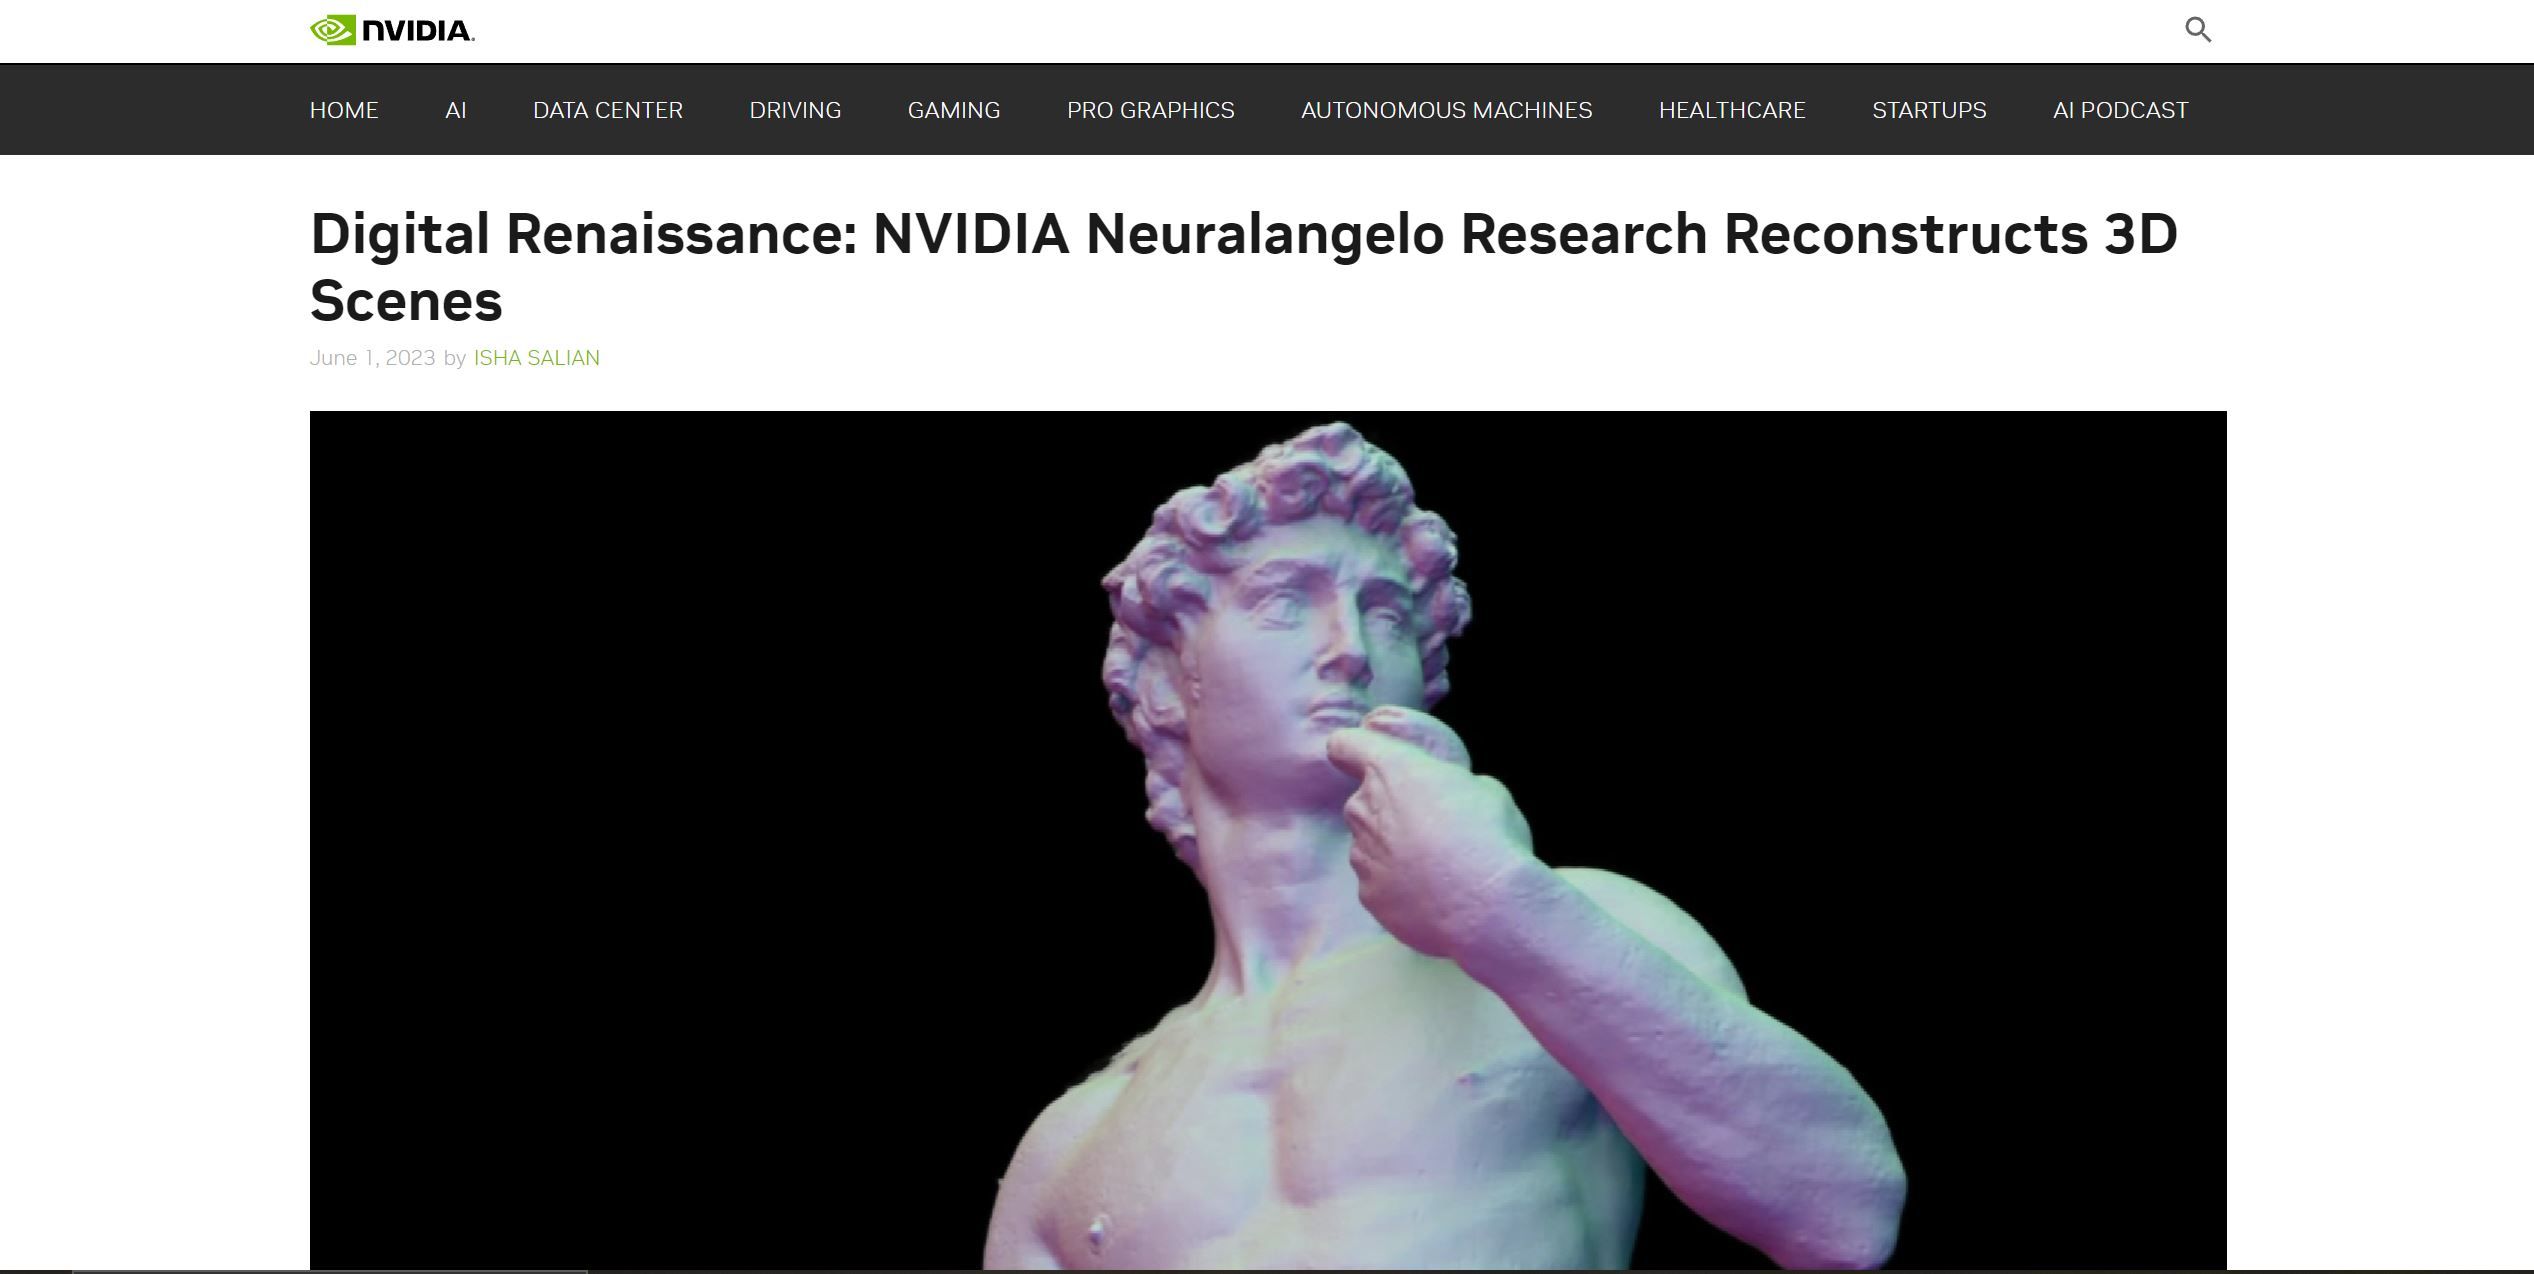 Neuralangelo by NVIDIA